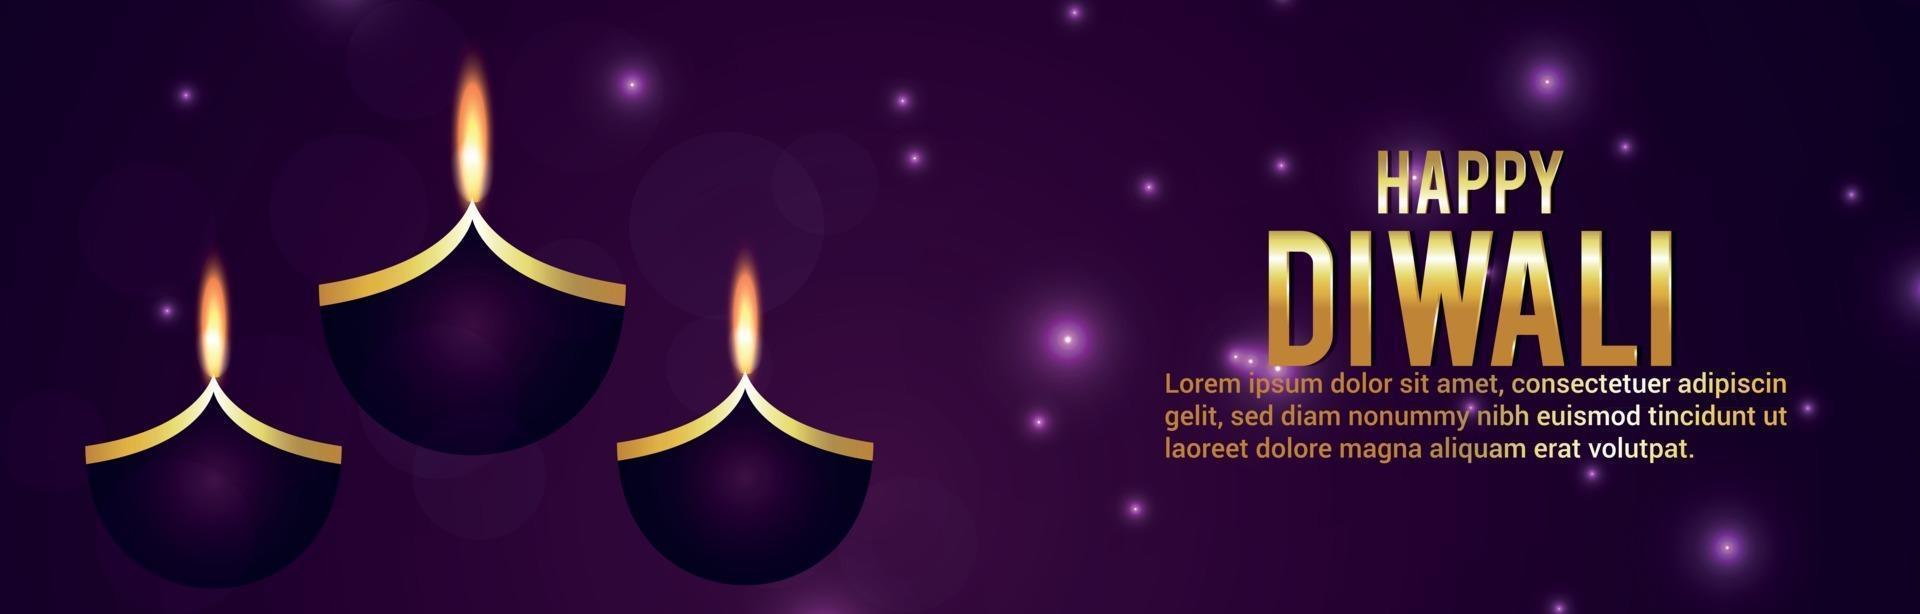 glückliches diwali Festival des Lichtfeierbanners vektor